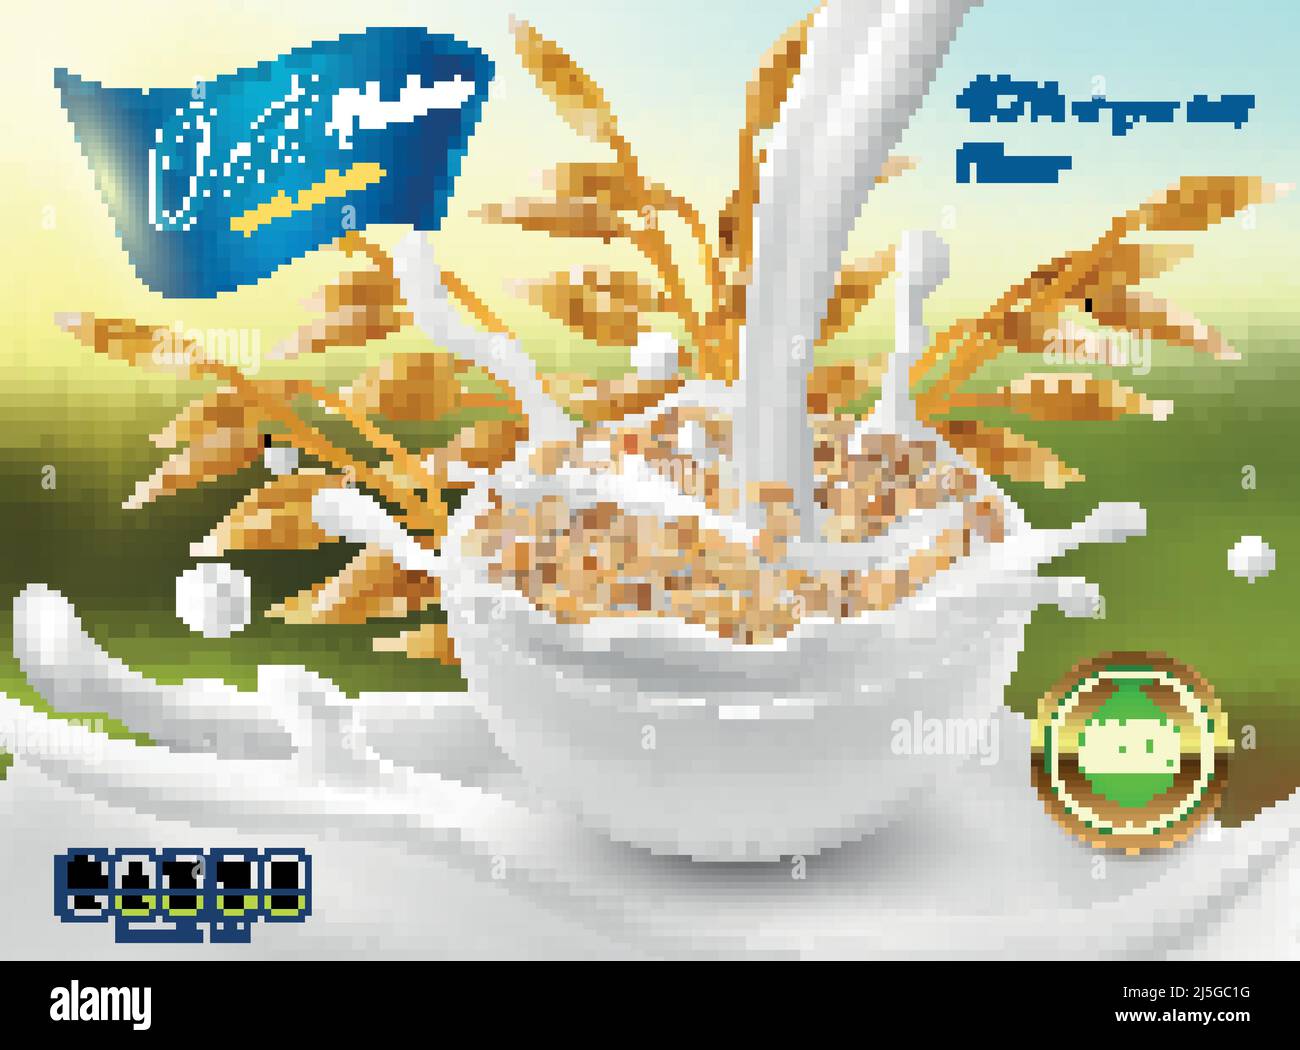 Vector 3D realistisches Promo Poster, Banner von Haferflocken. Getreideohren, Körner mit weißer Schale und Milchspritzern. Detaillierte Anlage für Verpackungsdesign. Stock Vektor